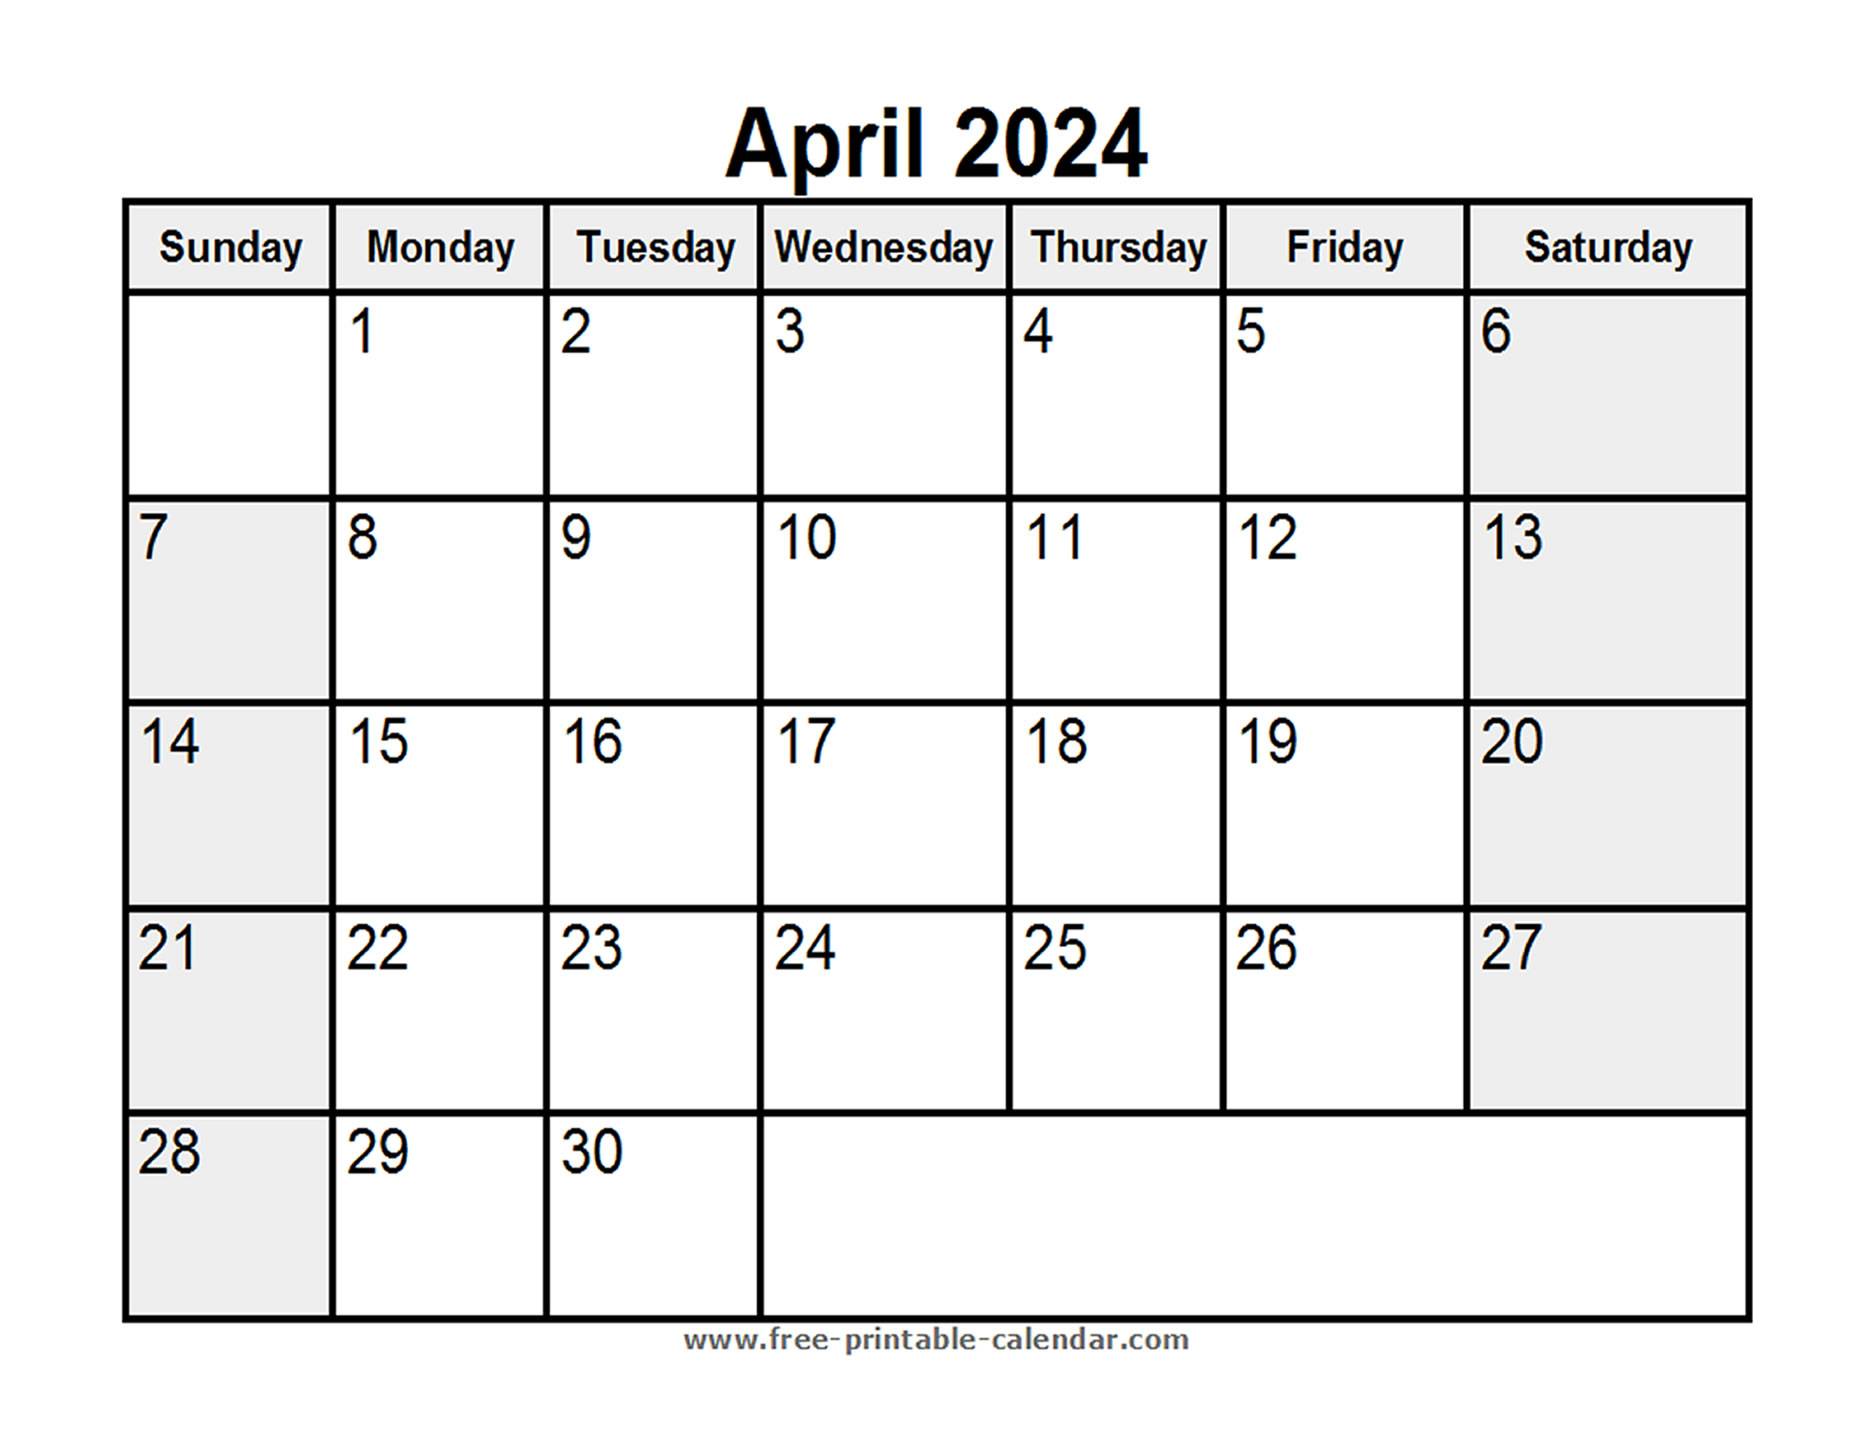 Printable April 2024 Calendar - Free-printable-calendar.com